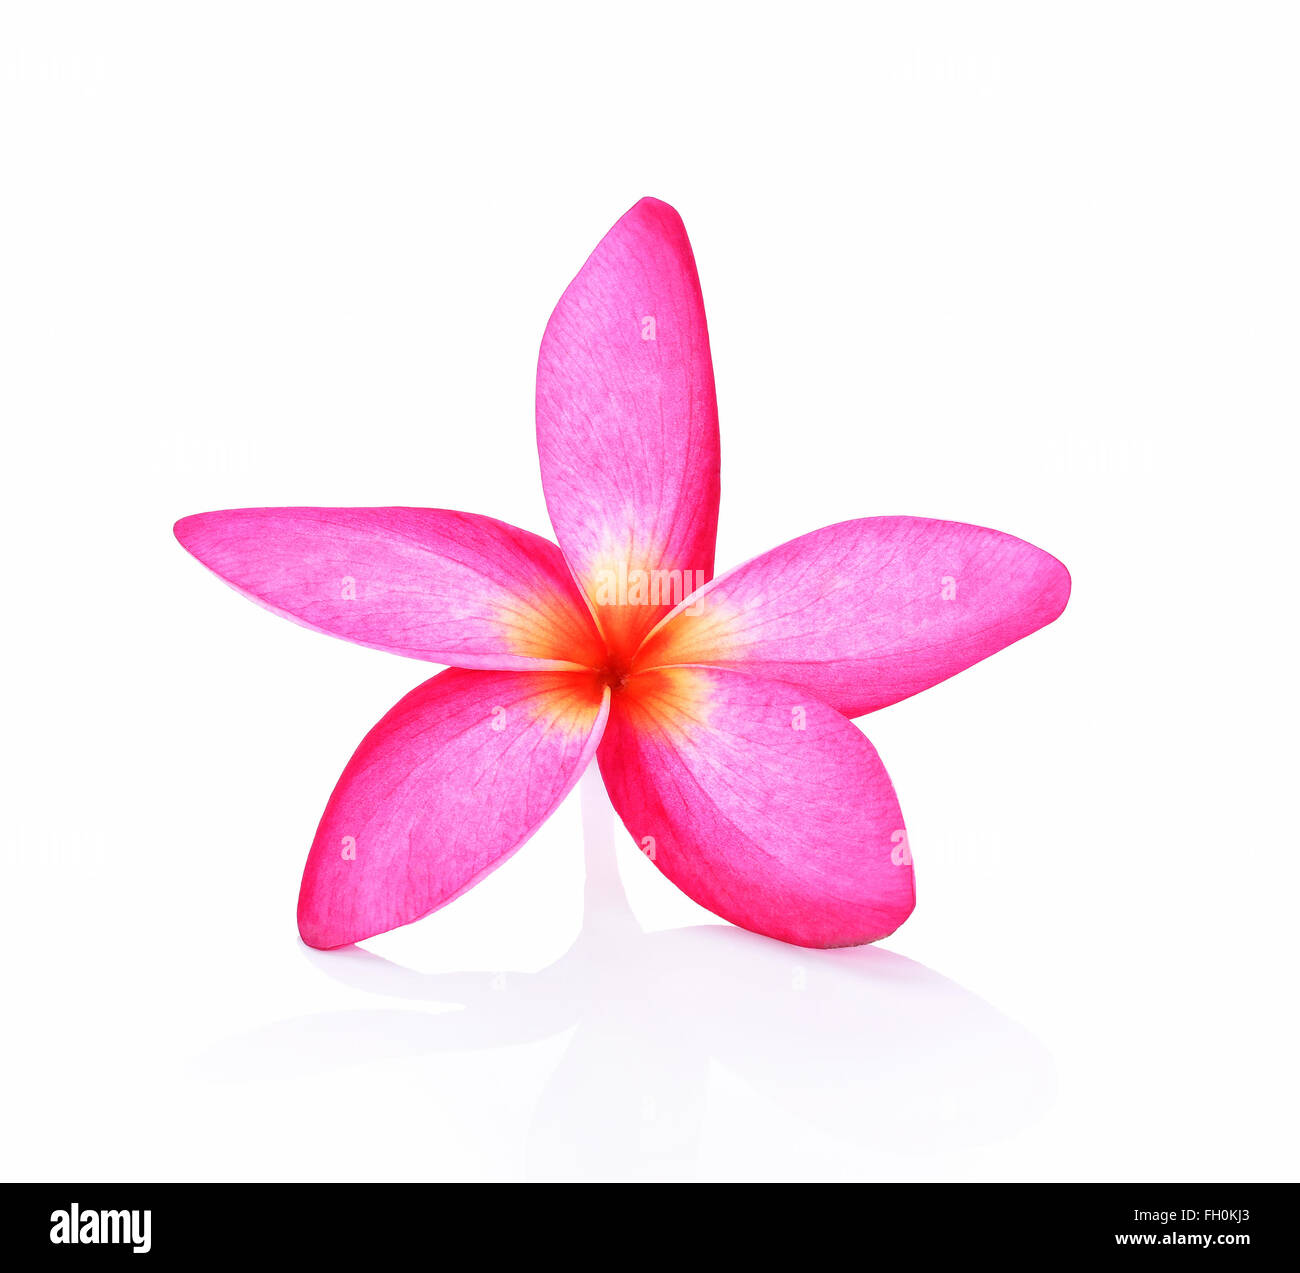 Frangipani flower on white background Stock Photo